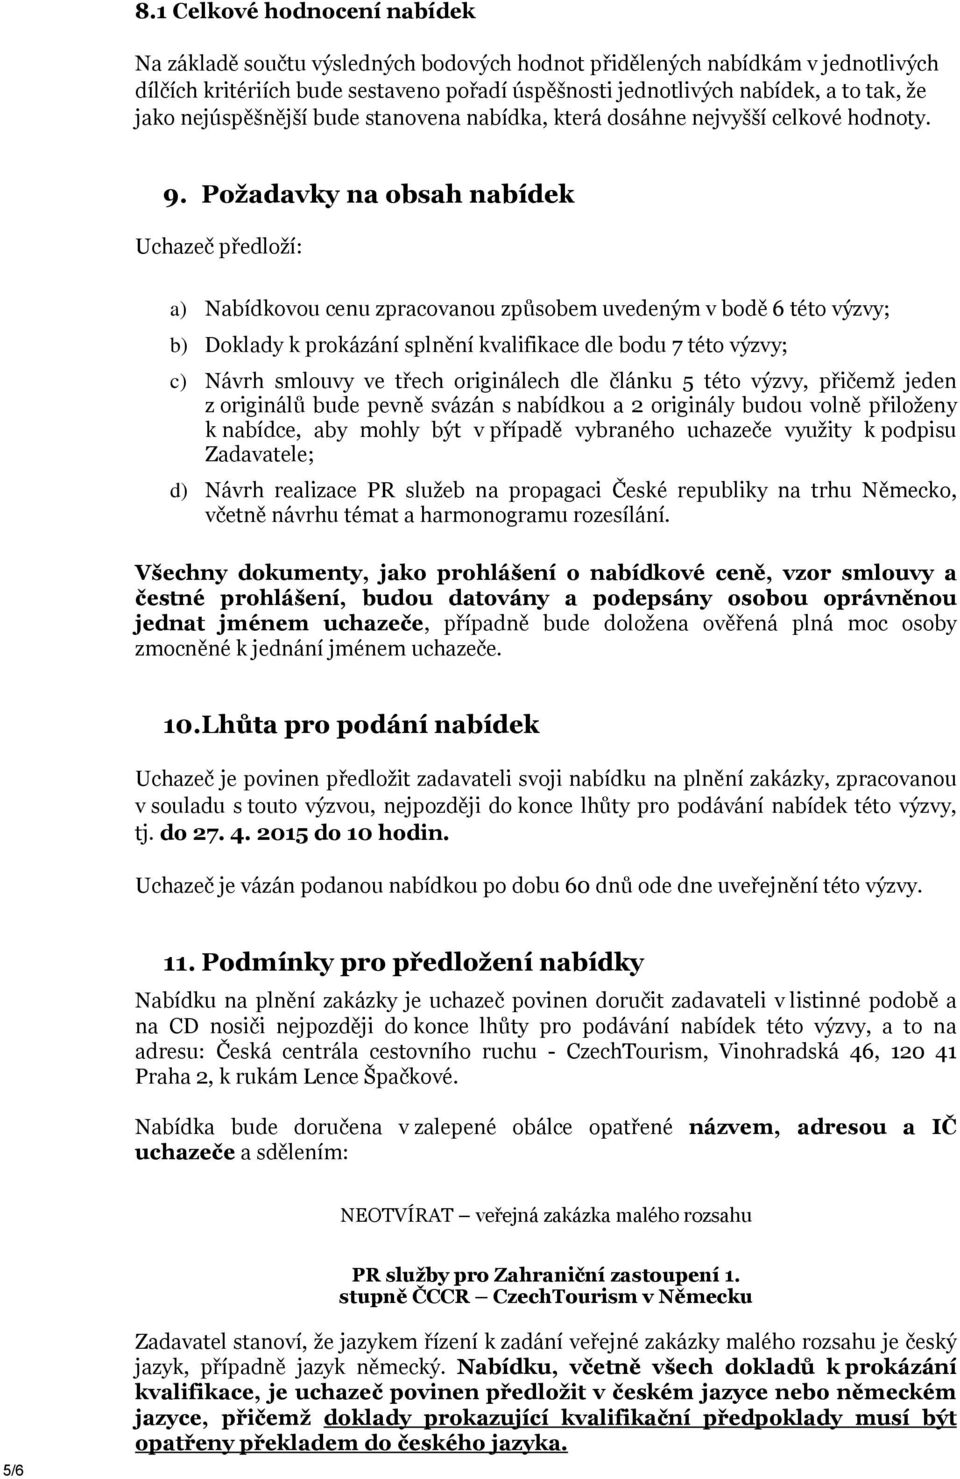 Požadavky na obsah nabídek Uchazeč předloží: a) Nabídkovou cenu zpracovanou způsobem uvedeným v bodě 6 této výzvy; b) Doklady k prokázání splnění kvalifikace dle bodu 7 této výzvy; c) Návrh smlouvy